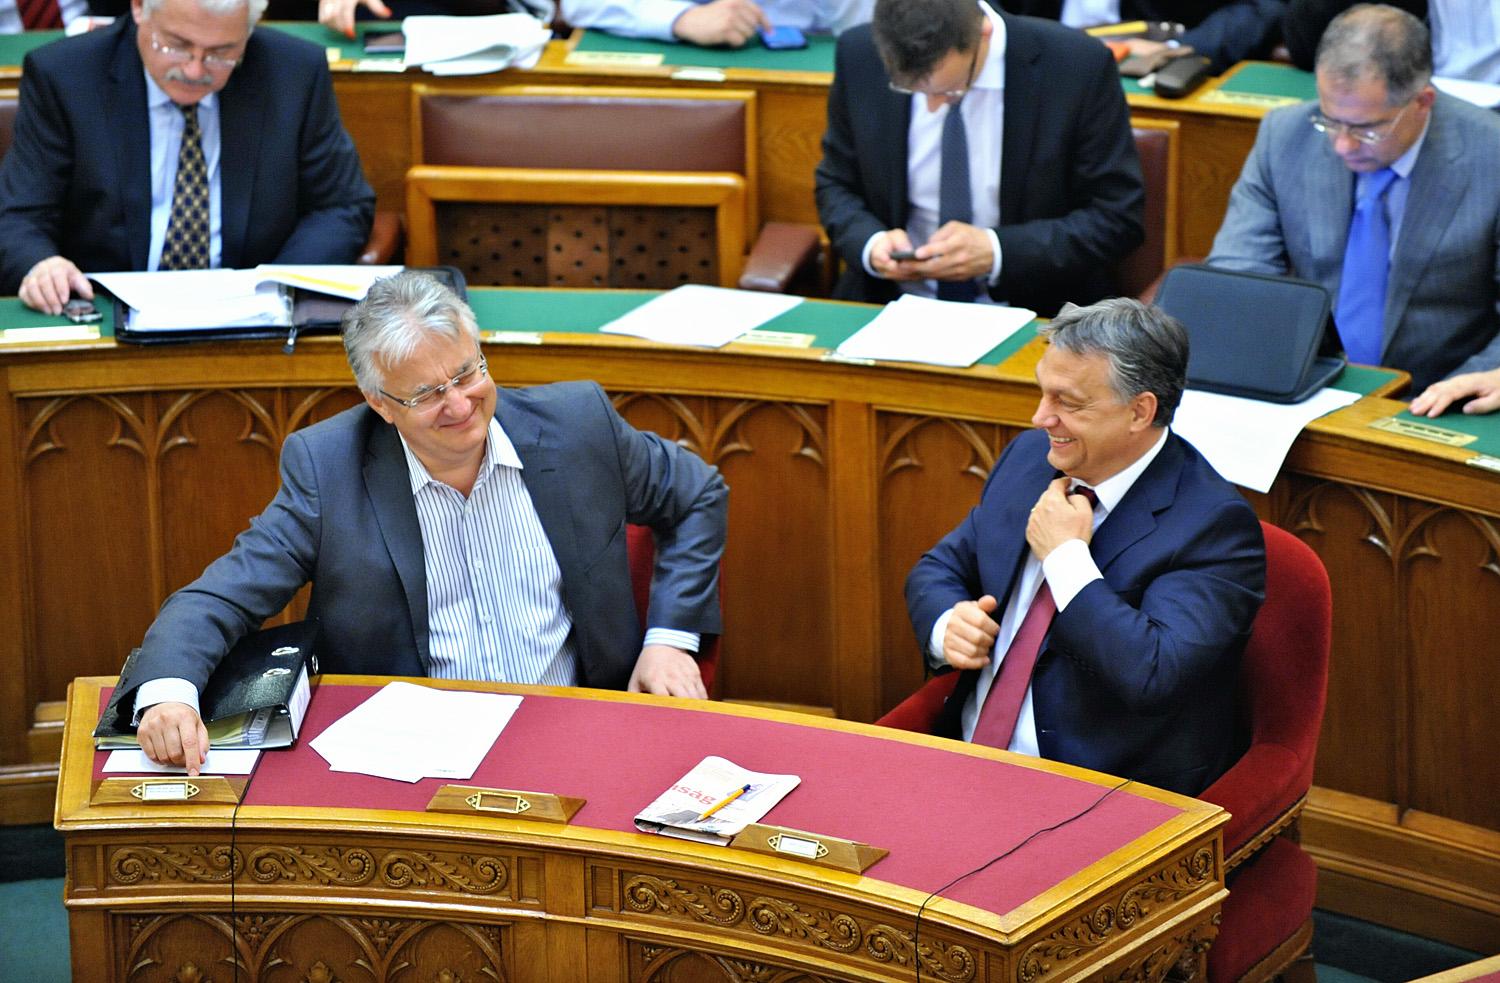 Semjén és Orbán feszülten figyelik a törvényhozás munkáját